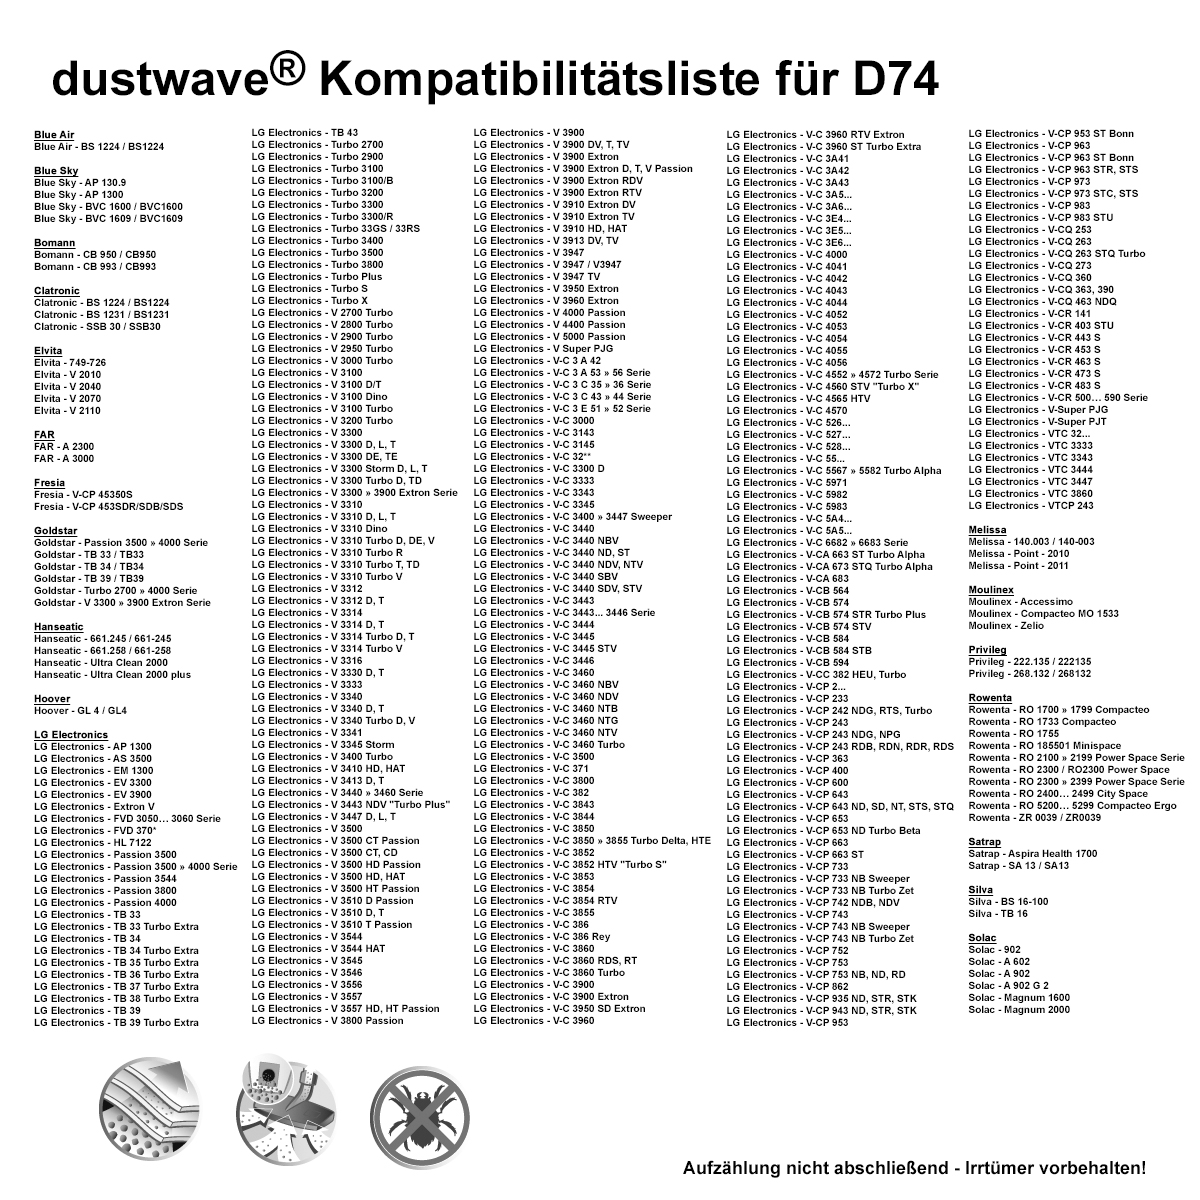 Dustwave® 10 Staubsaugerbeutel für Blue Sky BVC 1609 / BVC1609 - hocheffizient, mehrlagiges Mikrovlies mit Hygieneverschluss - Made in Germany